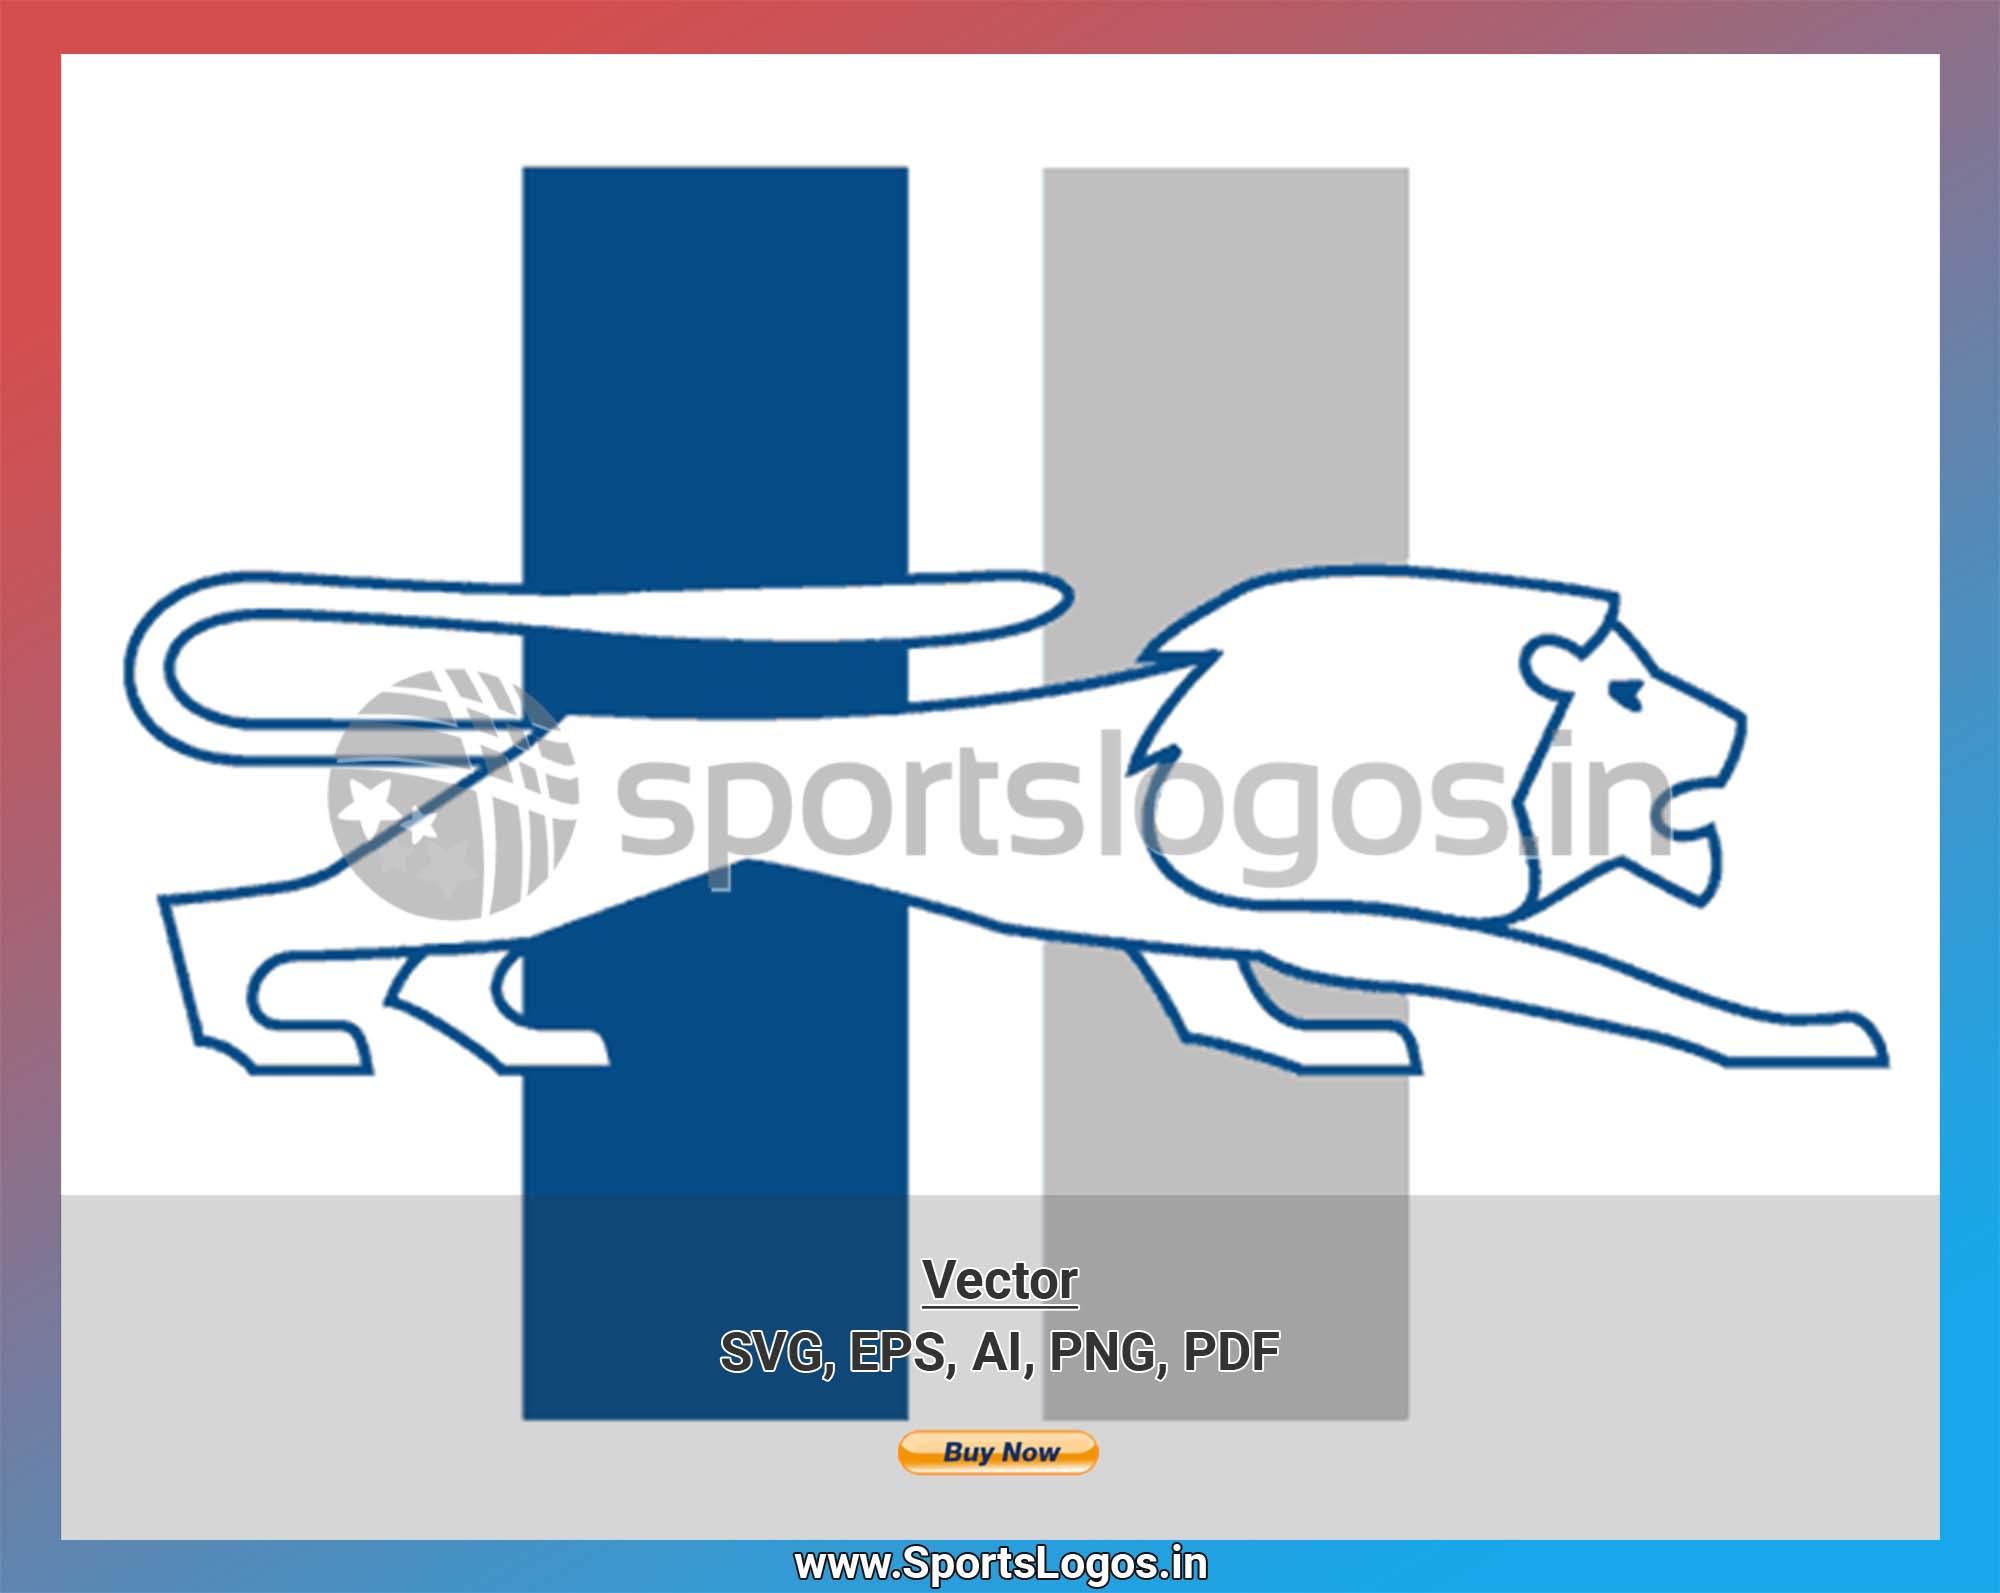 Detroit Lions SVG Files - Detroit Lions Logo SVG - Detroit Lions PNG Logo,  NFL Logo